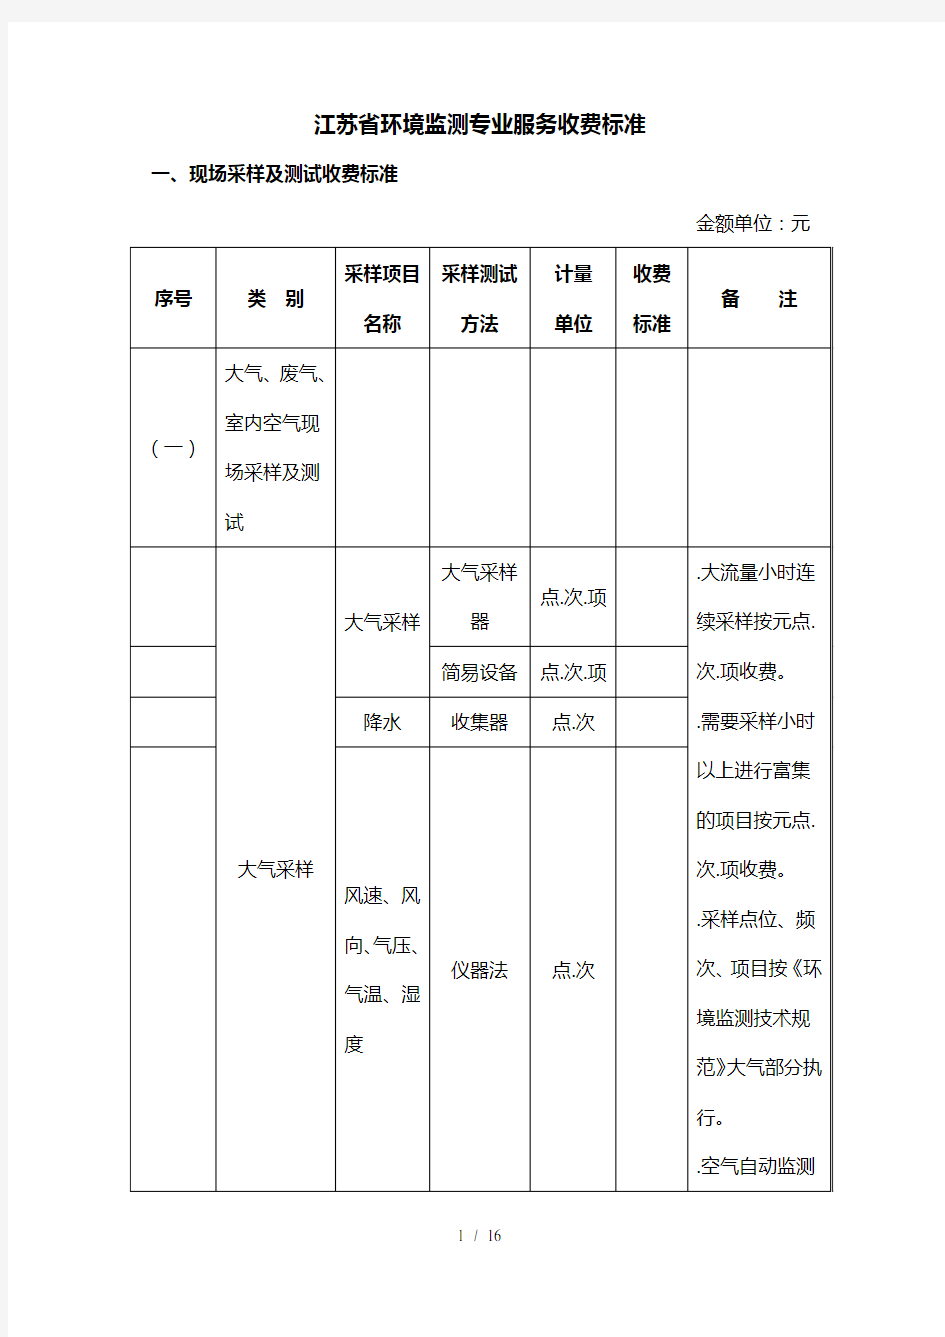 (完整版)江苏省环境监测专业服务收费标准